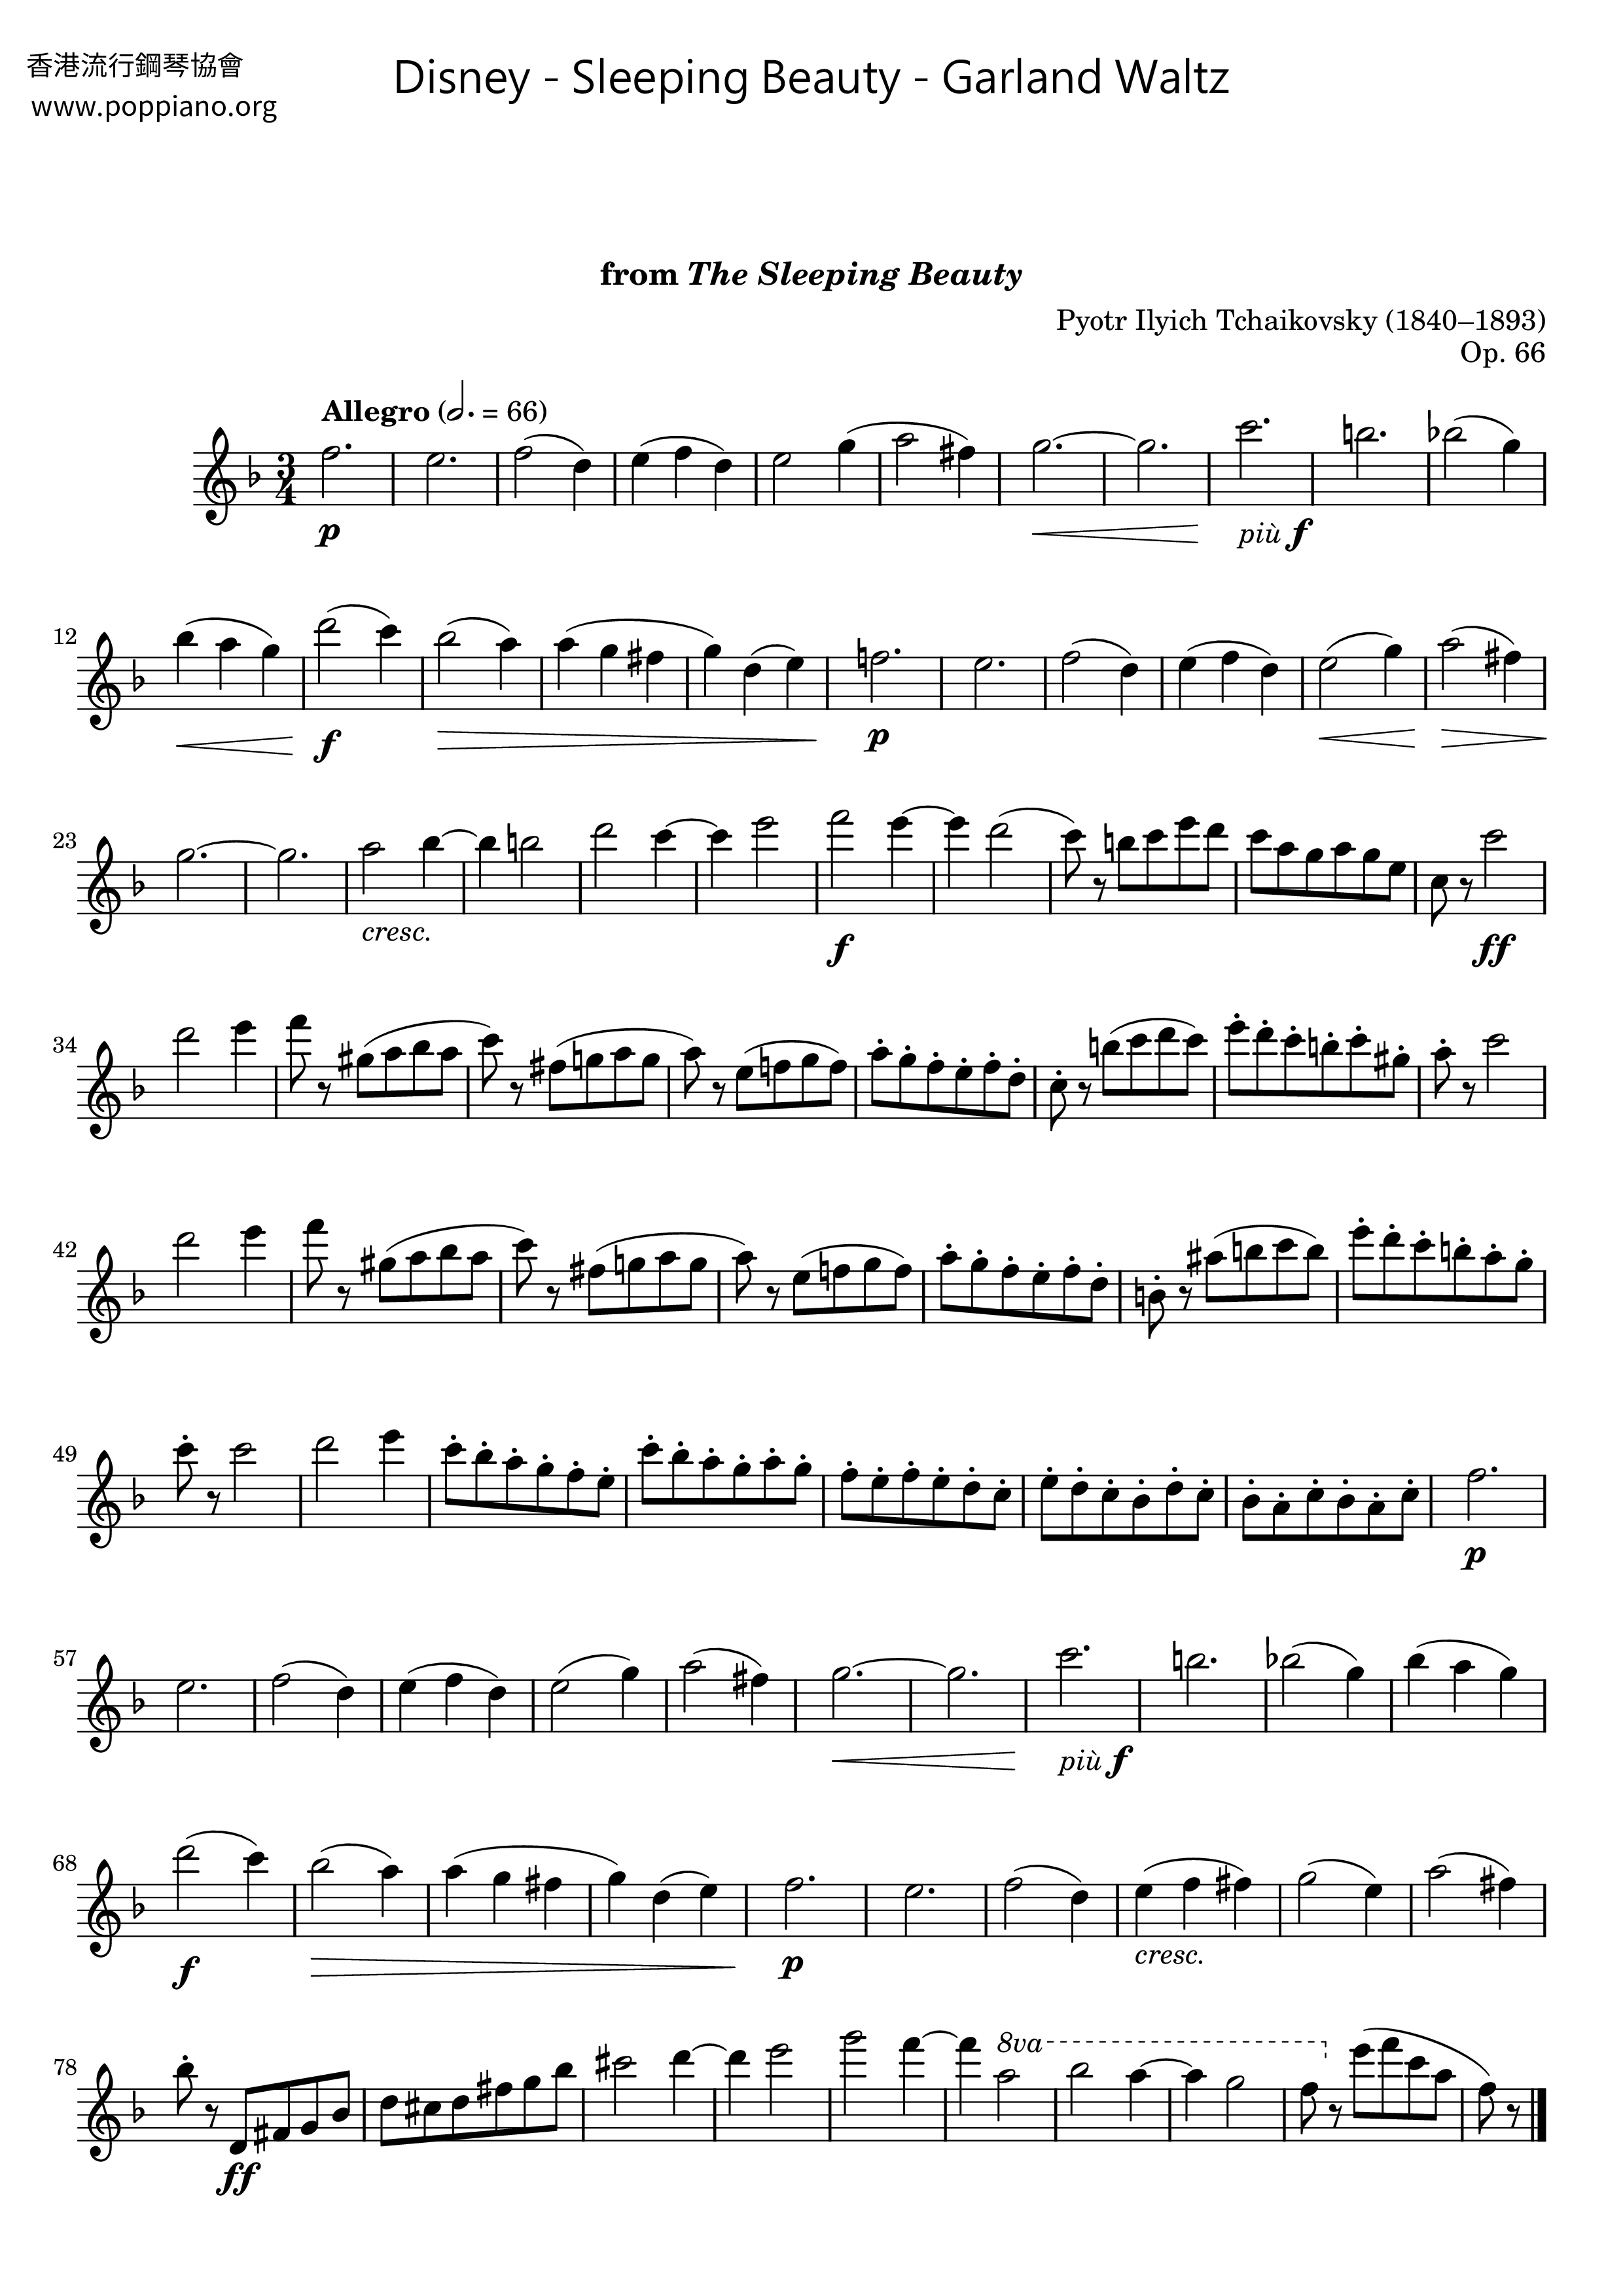 Sleeping Beauty - Garland Waltz Score